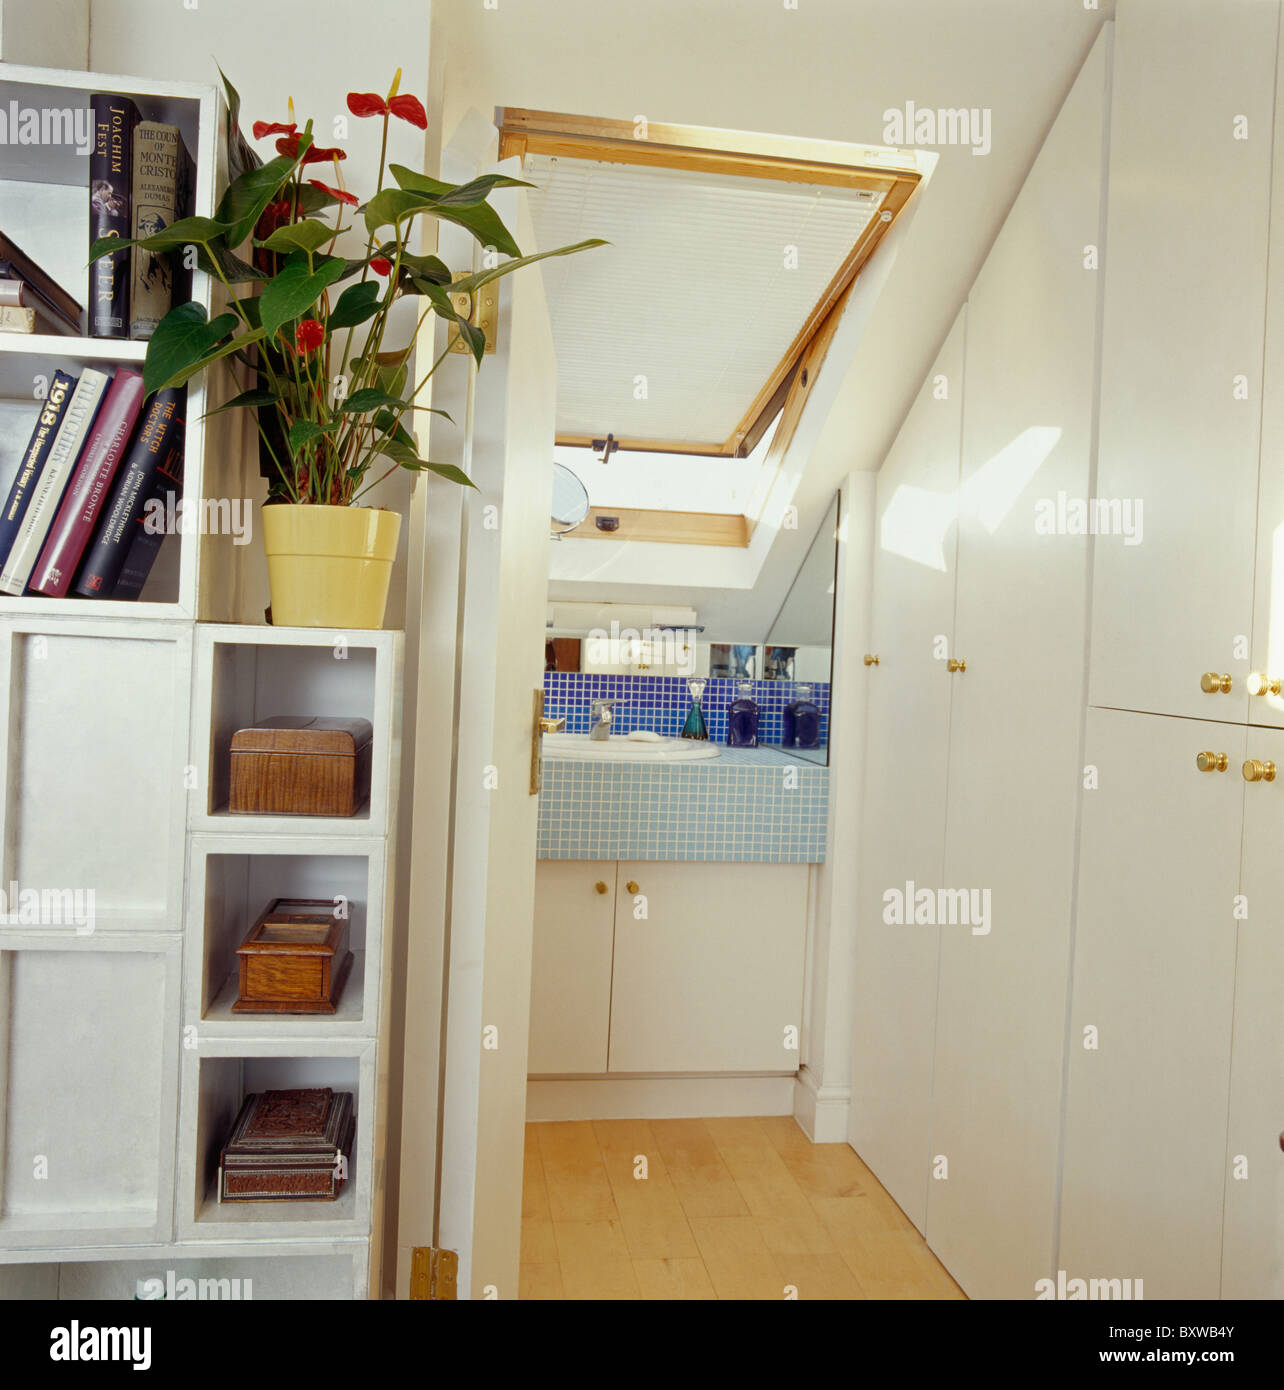 Estanterías junto a puerta plegable para en-suite loft baño conversión equipado con armario y ventana velux con blanco ciego Foto de stock